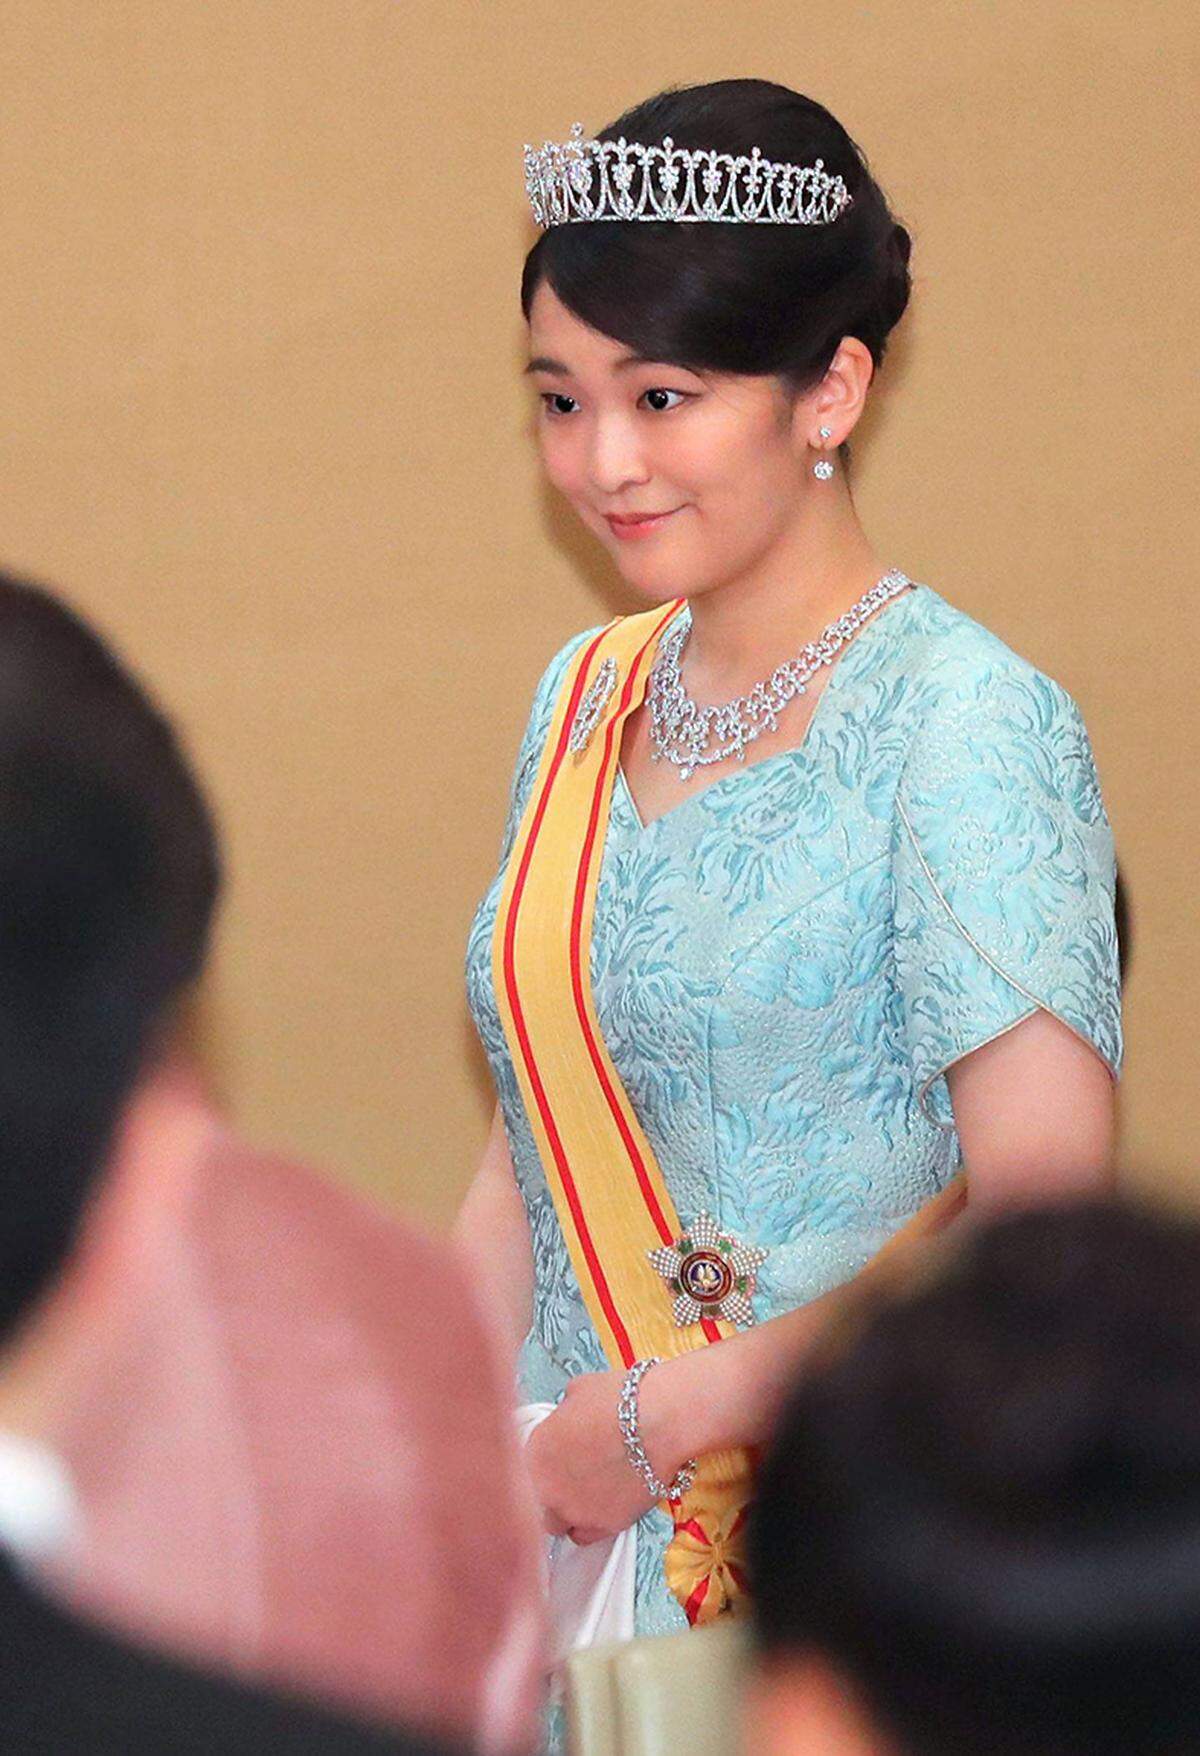 Auch eine andere Prinzessin wird 2018 den Bund der Ehe schließen: Japans Prinzessin Mako. Sie wird - im Gegensatz zu Prinzessin Eugenie von York - all ihre Titel und Privilegien verlieren (und ihren Schmuck!) und kein Mitglied der kaiserlichen Familie mehr sein. Das Protokoll des Kaiserhofes sieht dies so vor.